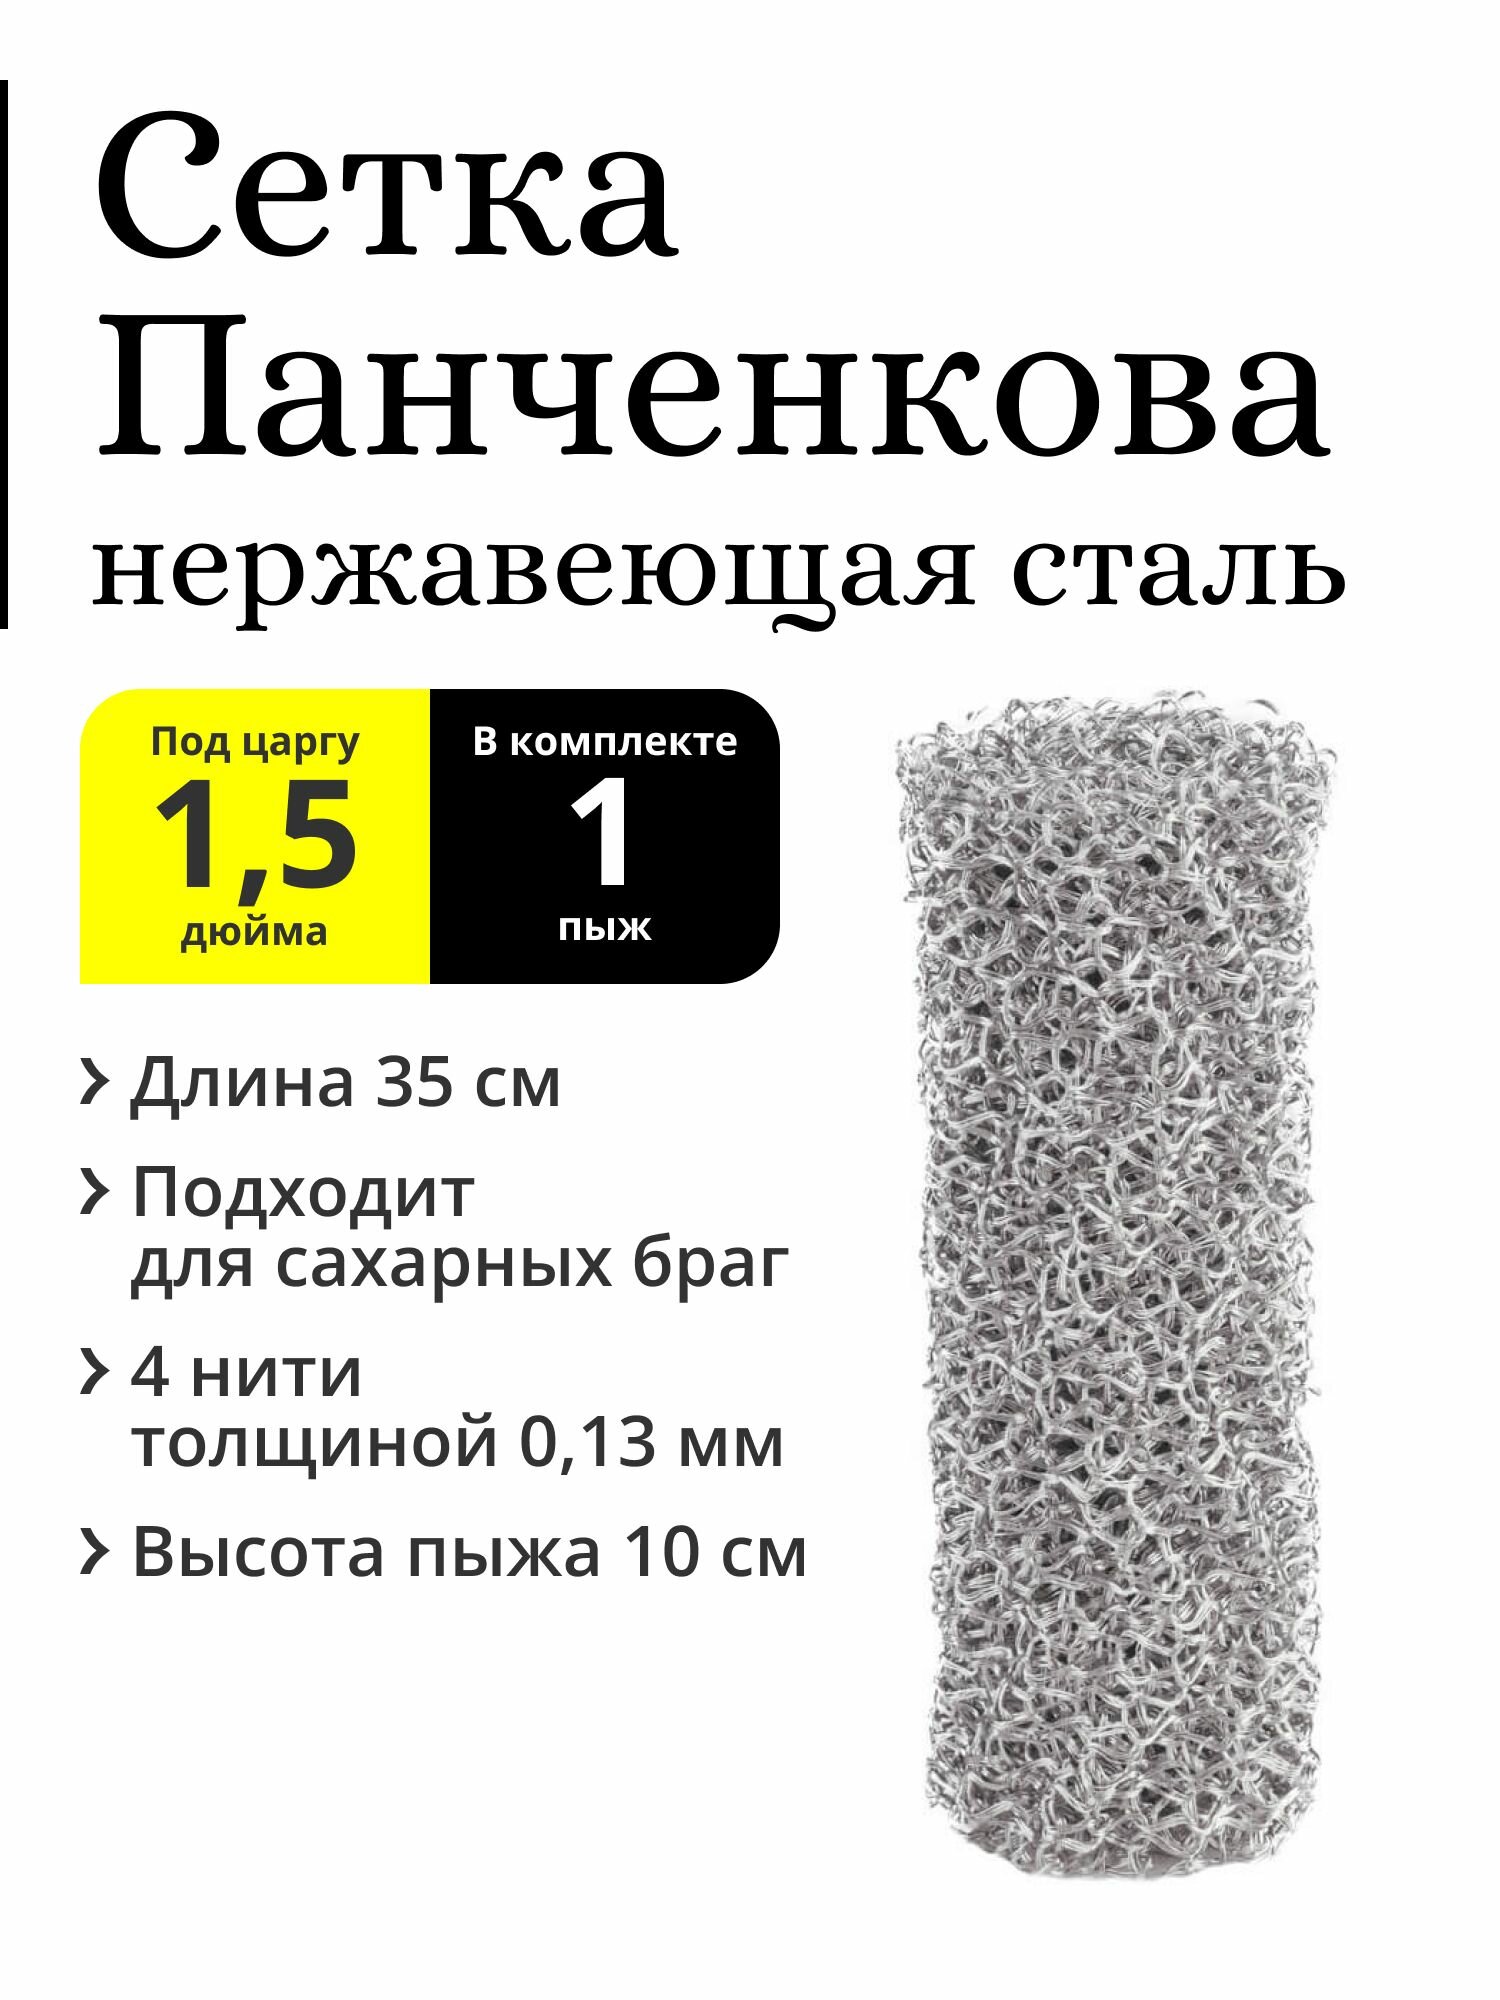 Пыж РПН (сетка Панченкова) 1 штука 35 см, нержавеющая сталь, 4 нити, для царги 1,5 дюйма